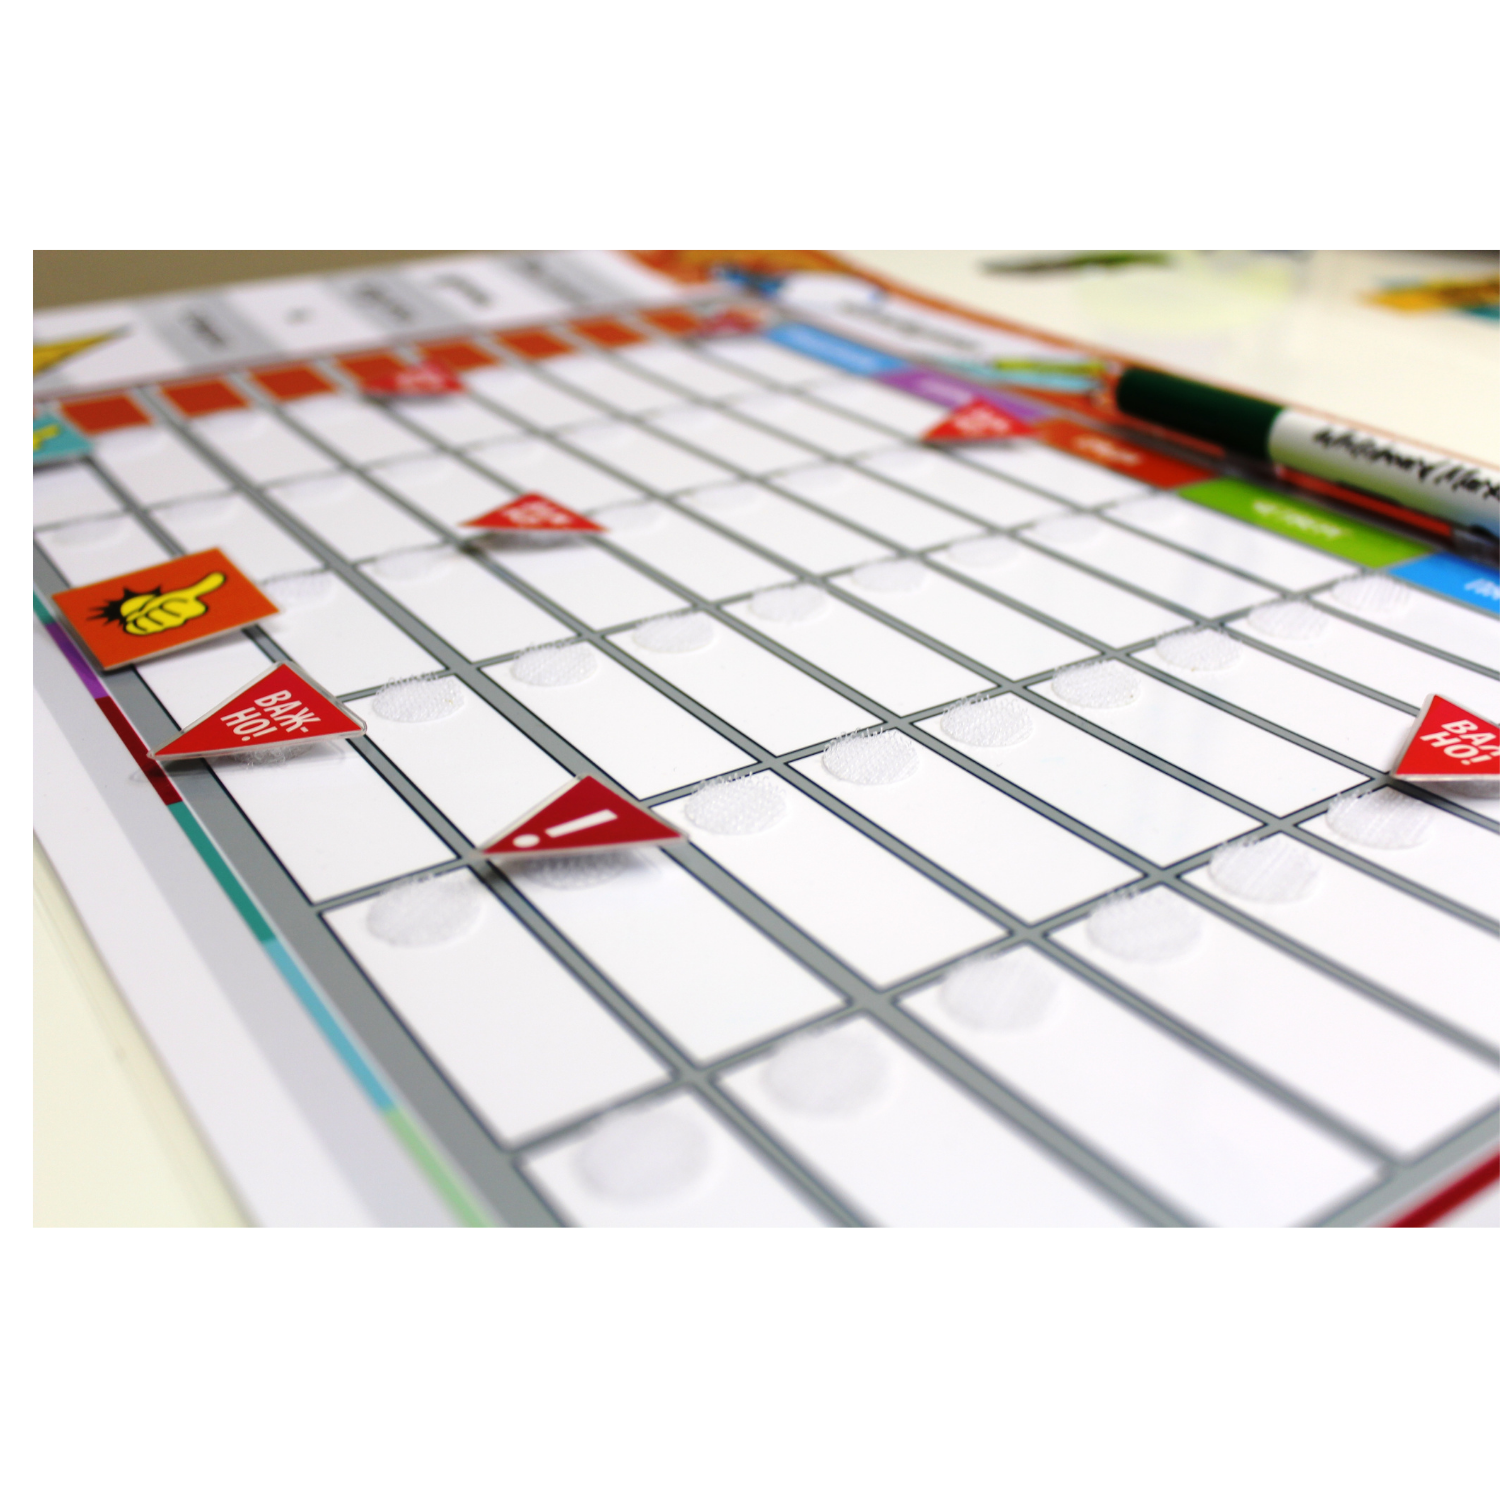 Игровой набор Марфа Занимательные липучки Помощник школьника расписание на липучках пиши-стирай - фото 3